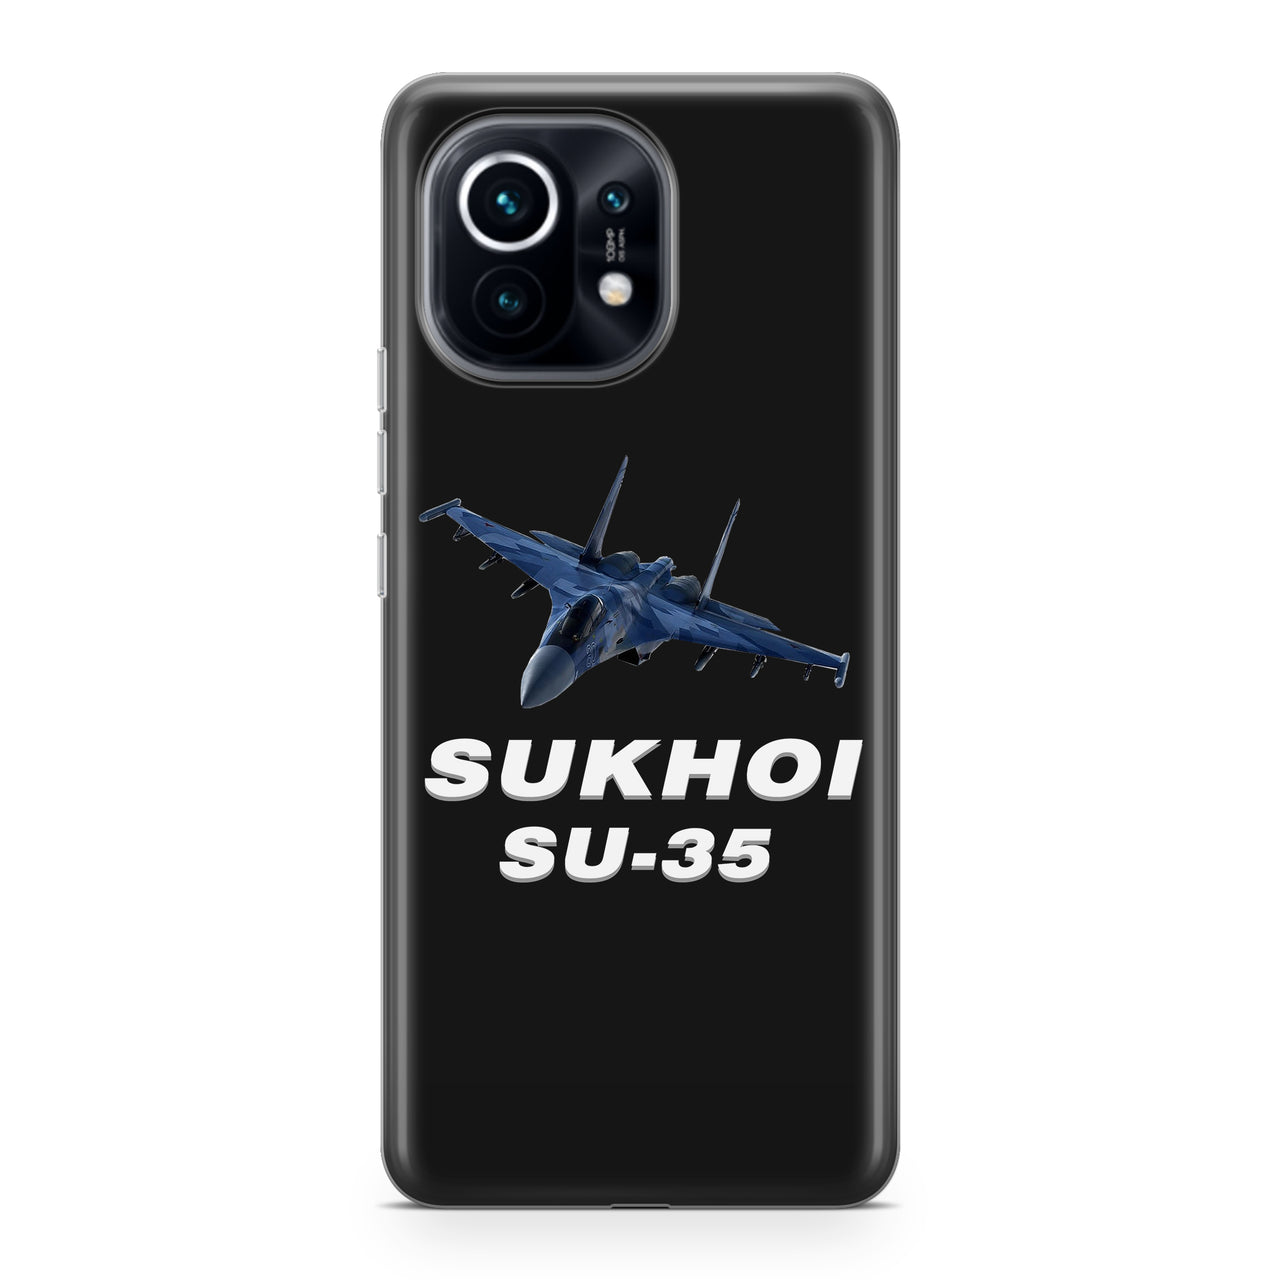 The Sukhoi SU-35 Designed Xiaomi Cases